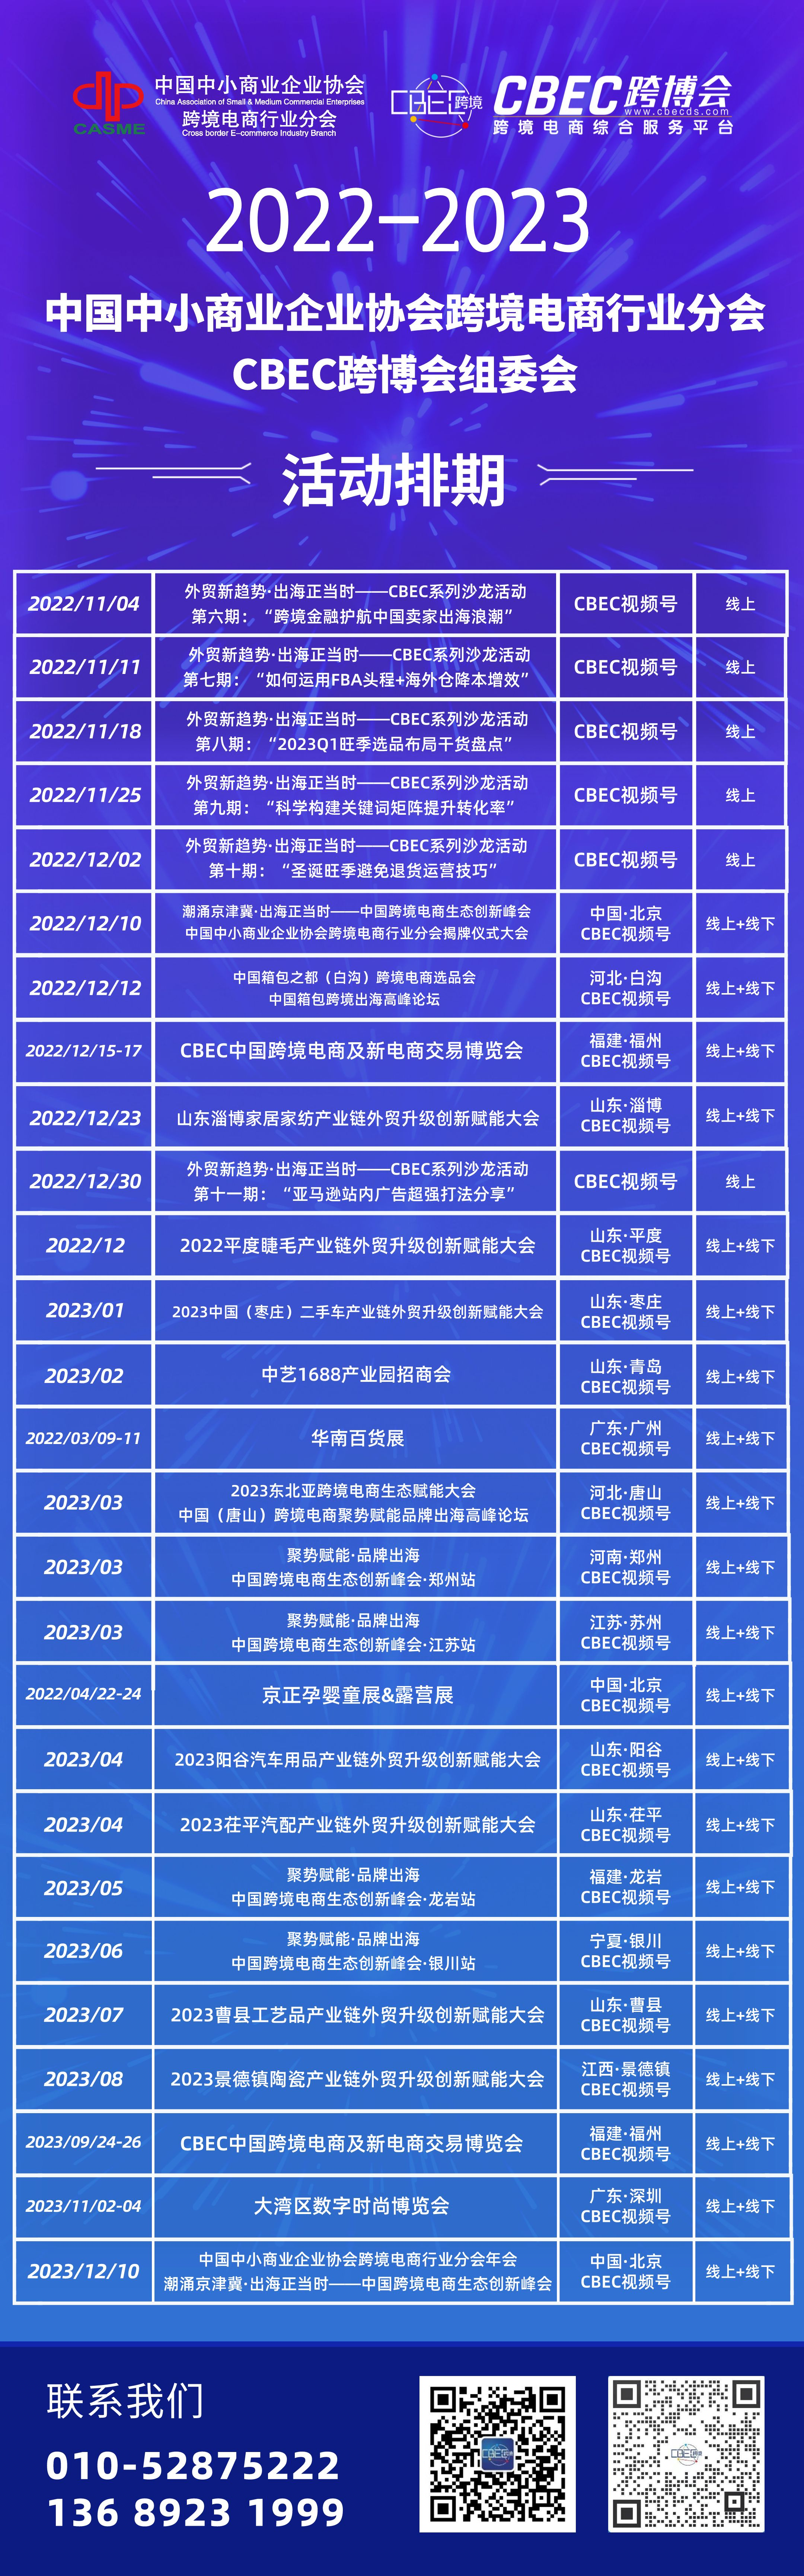 小快狗周老湿邀你共赴第17届中国中小企业家年会暨中国跨境电商生态创新峰会